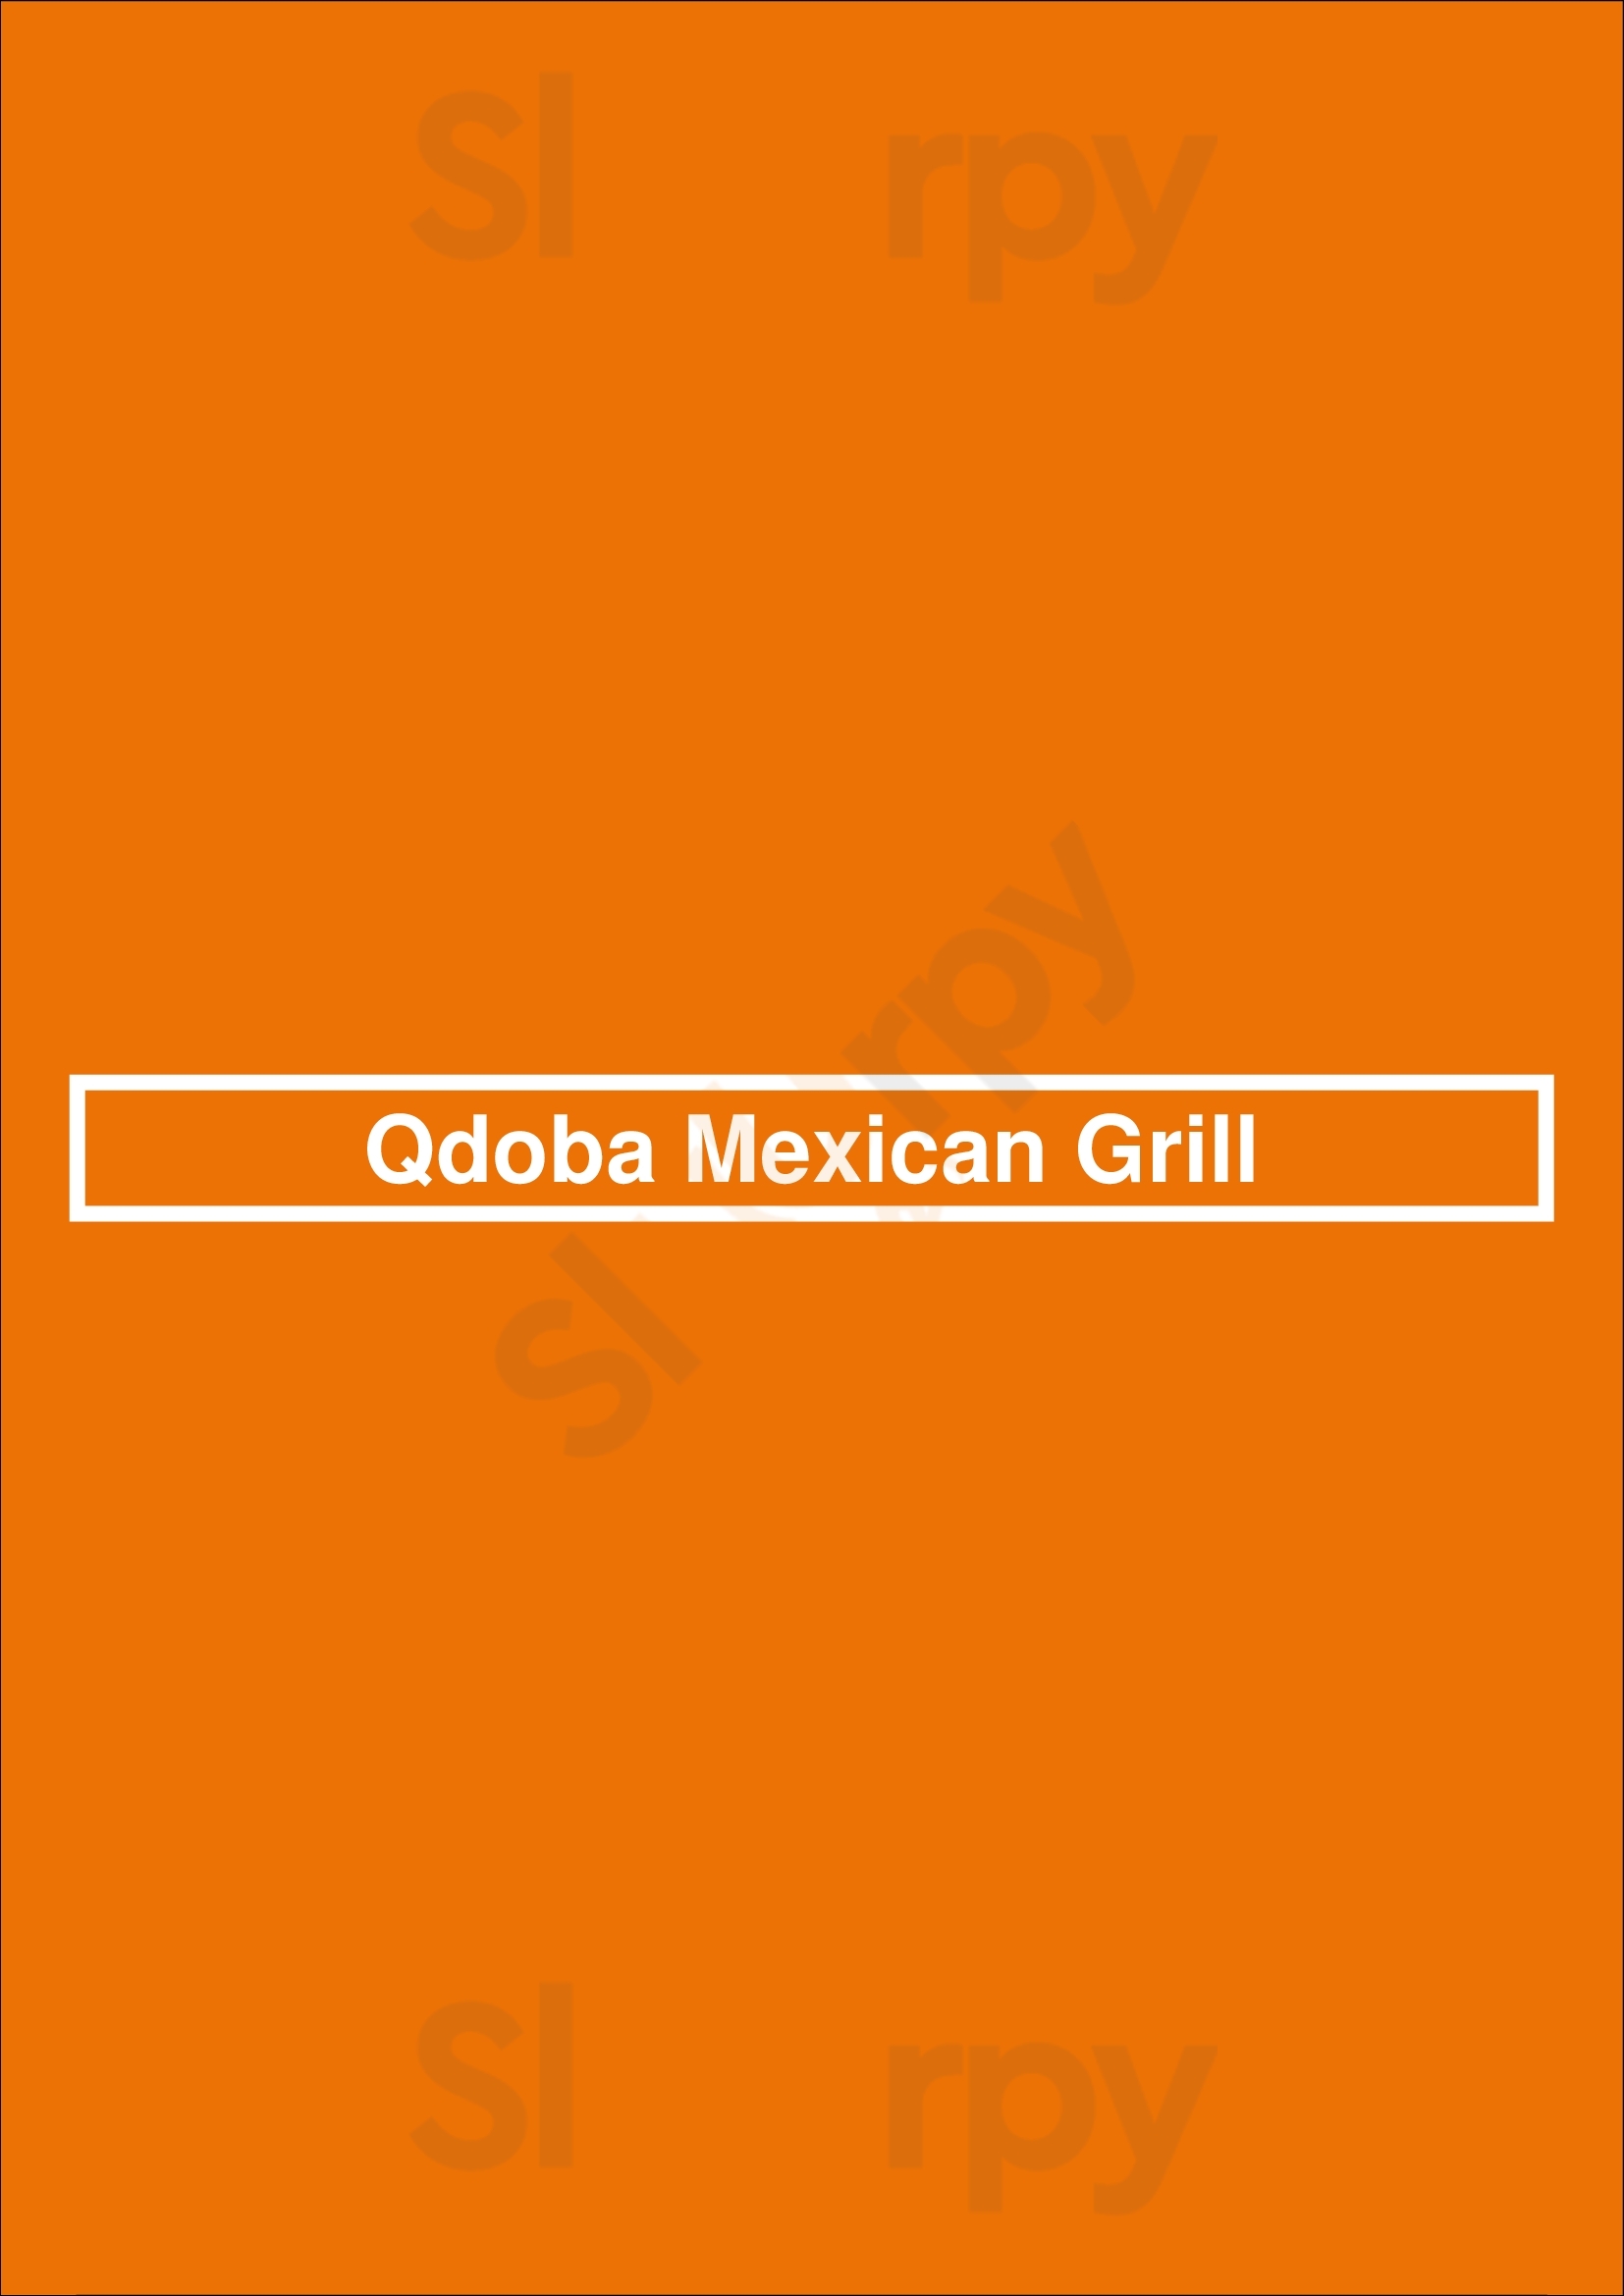 Qdoba Mexican Grill Lexington Menu - 1